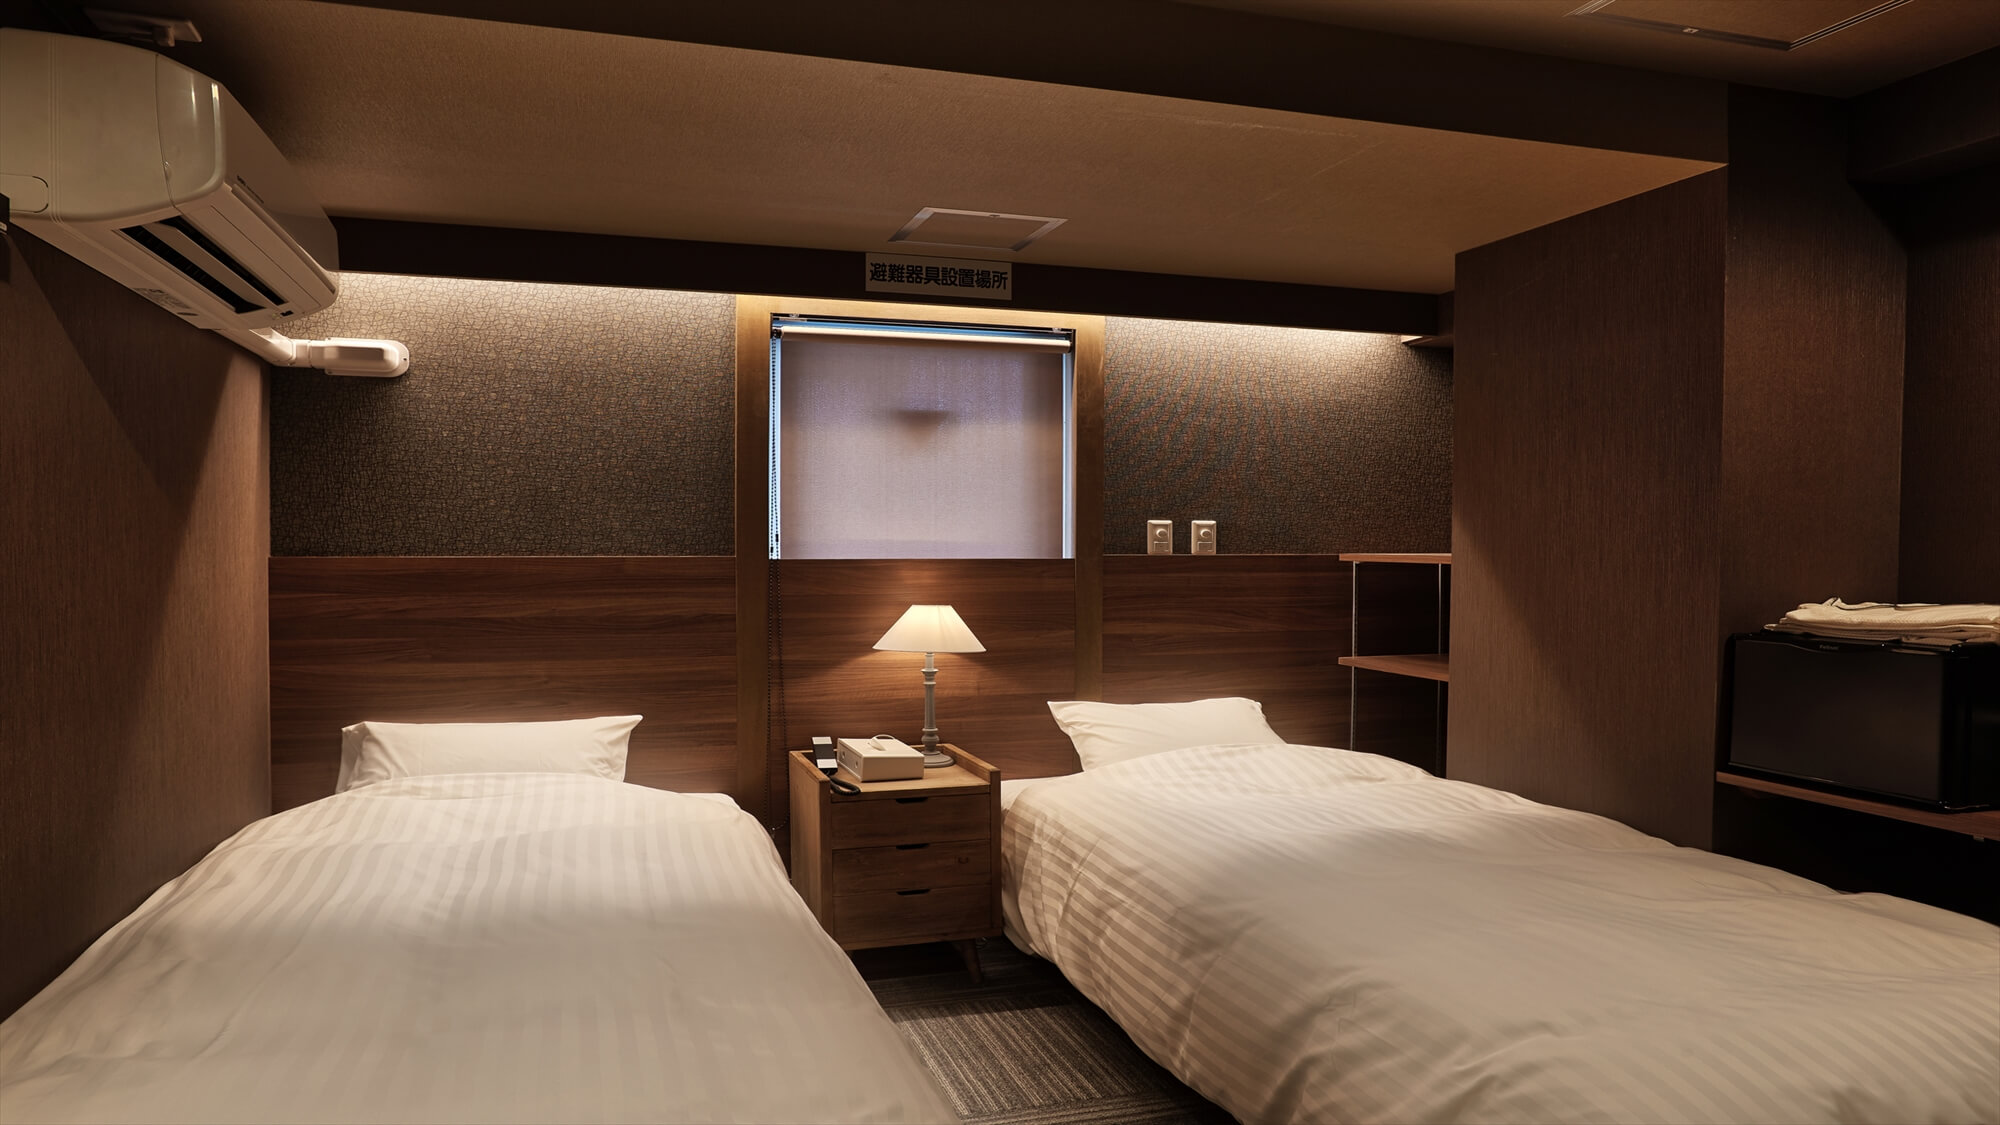  【ツインルーム】ツインルームのベッドサイズは幅100×長さ195の2台